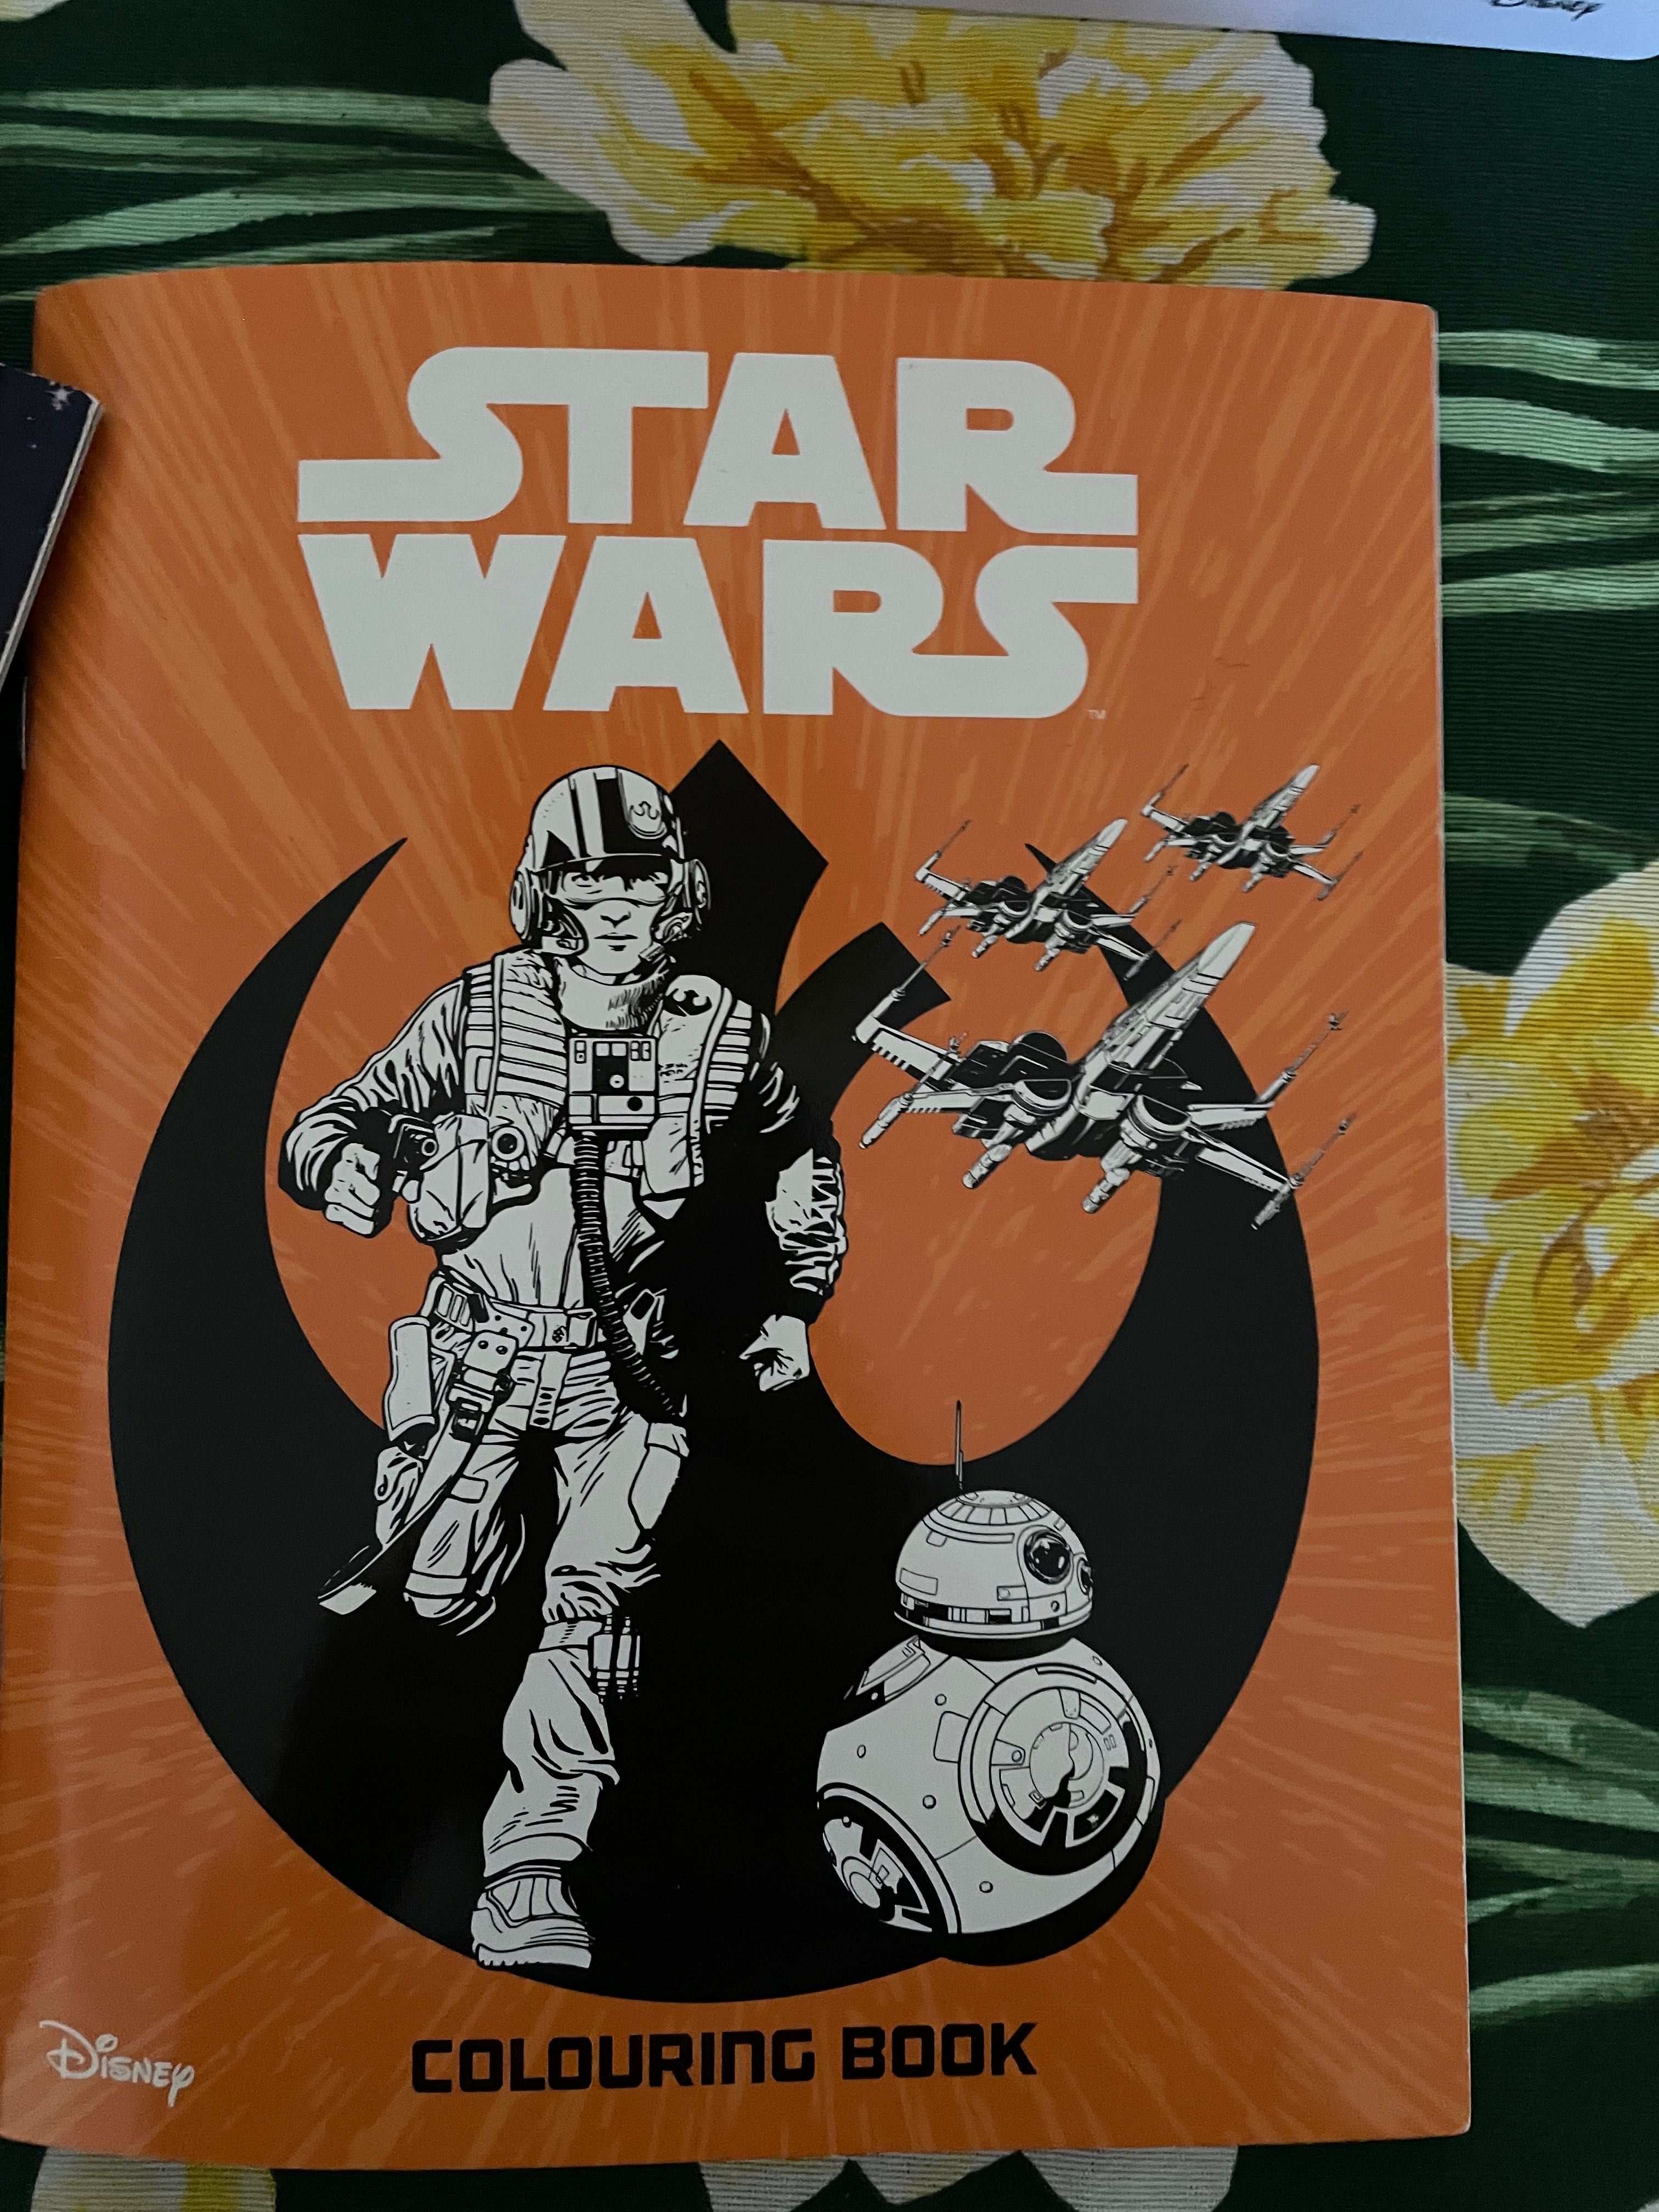 Star Wars puszka pudełko z kolorowanką i książkami. Astro tin Disney